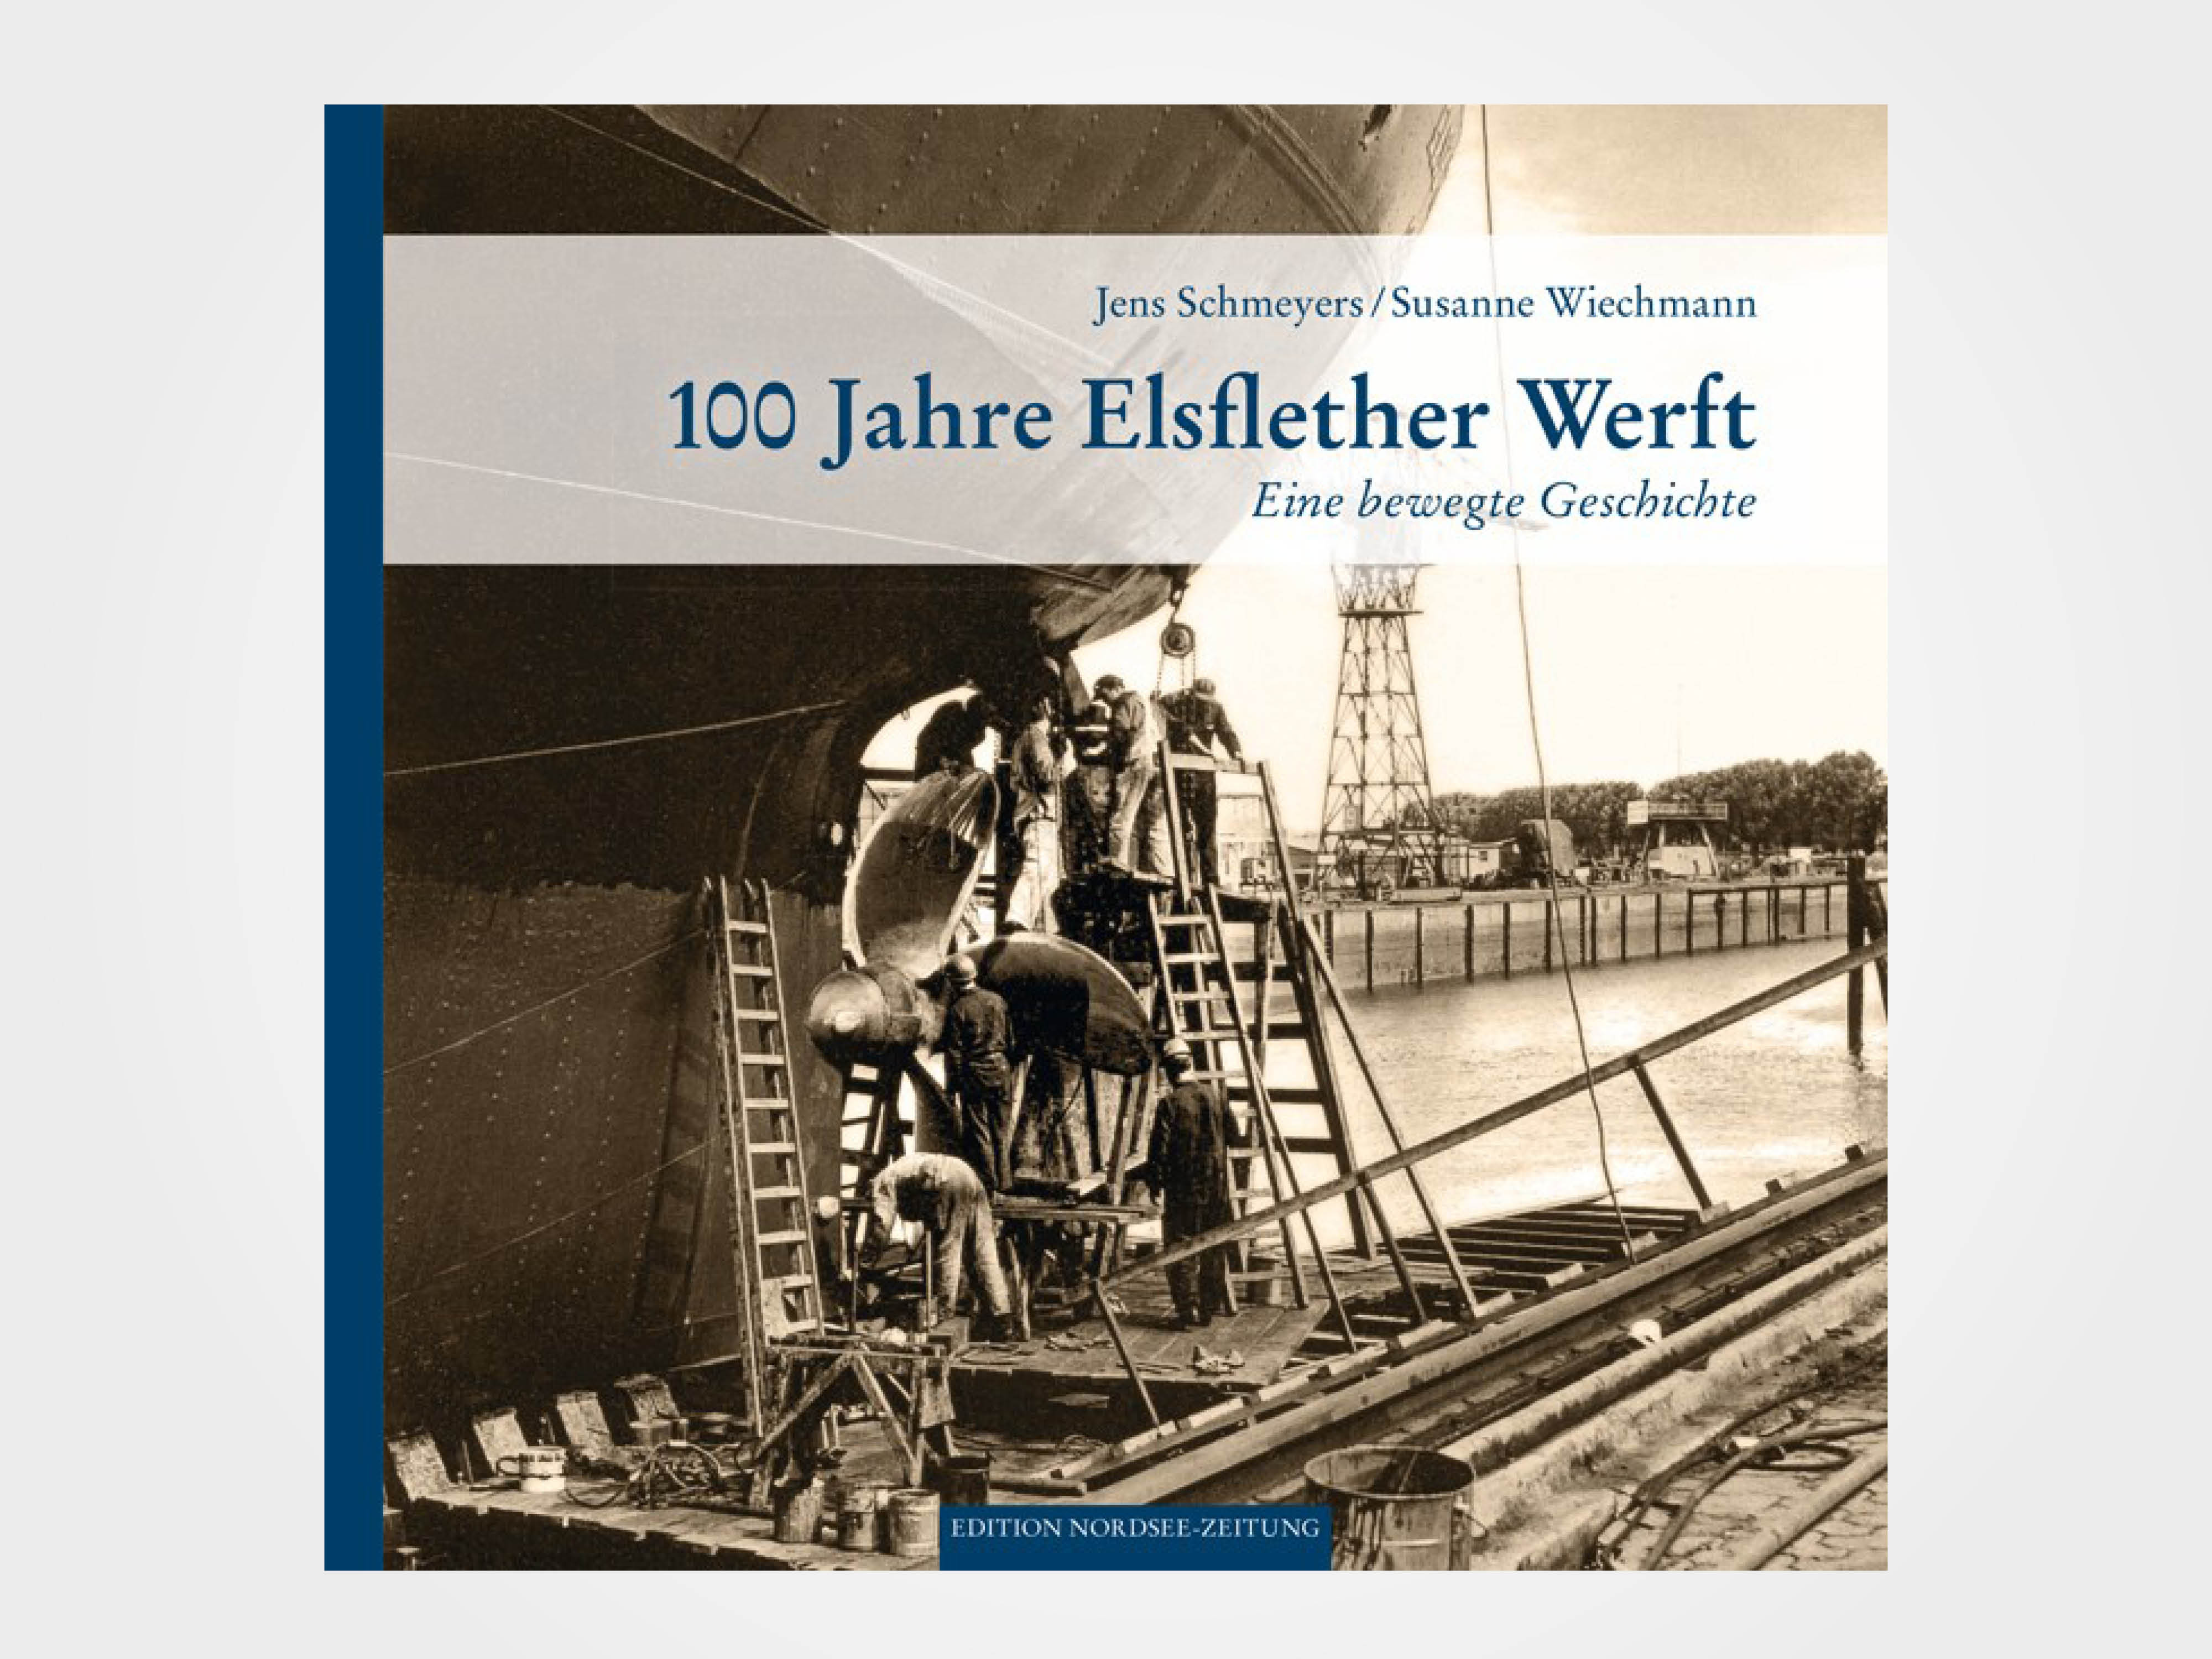 100 Jahre Elsflether Werft